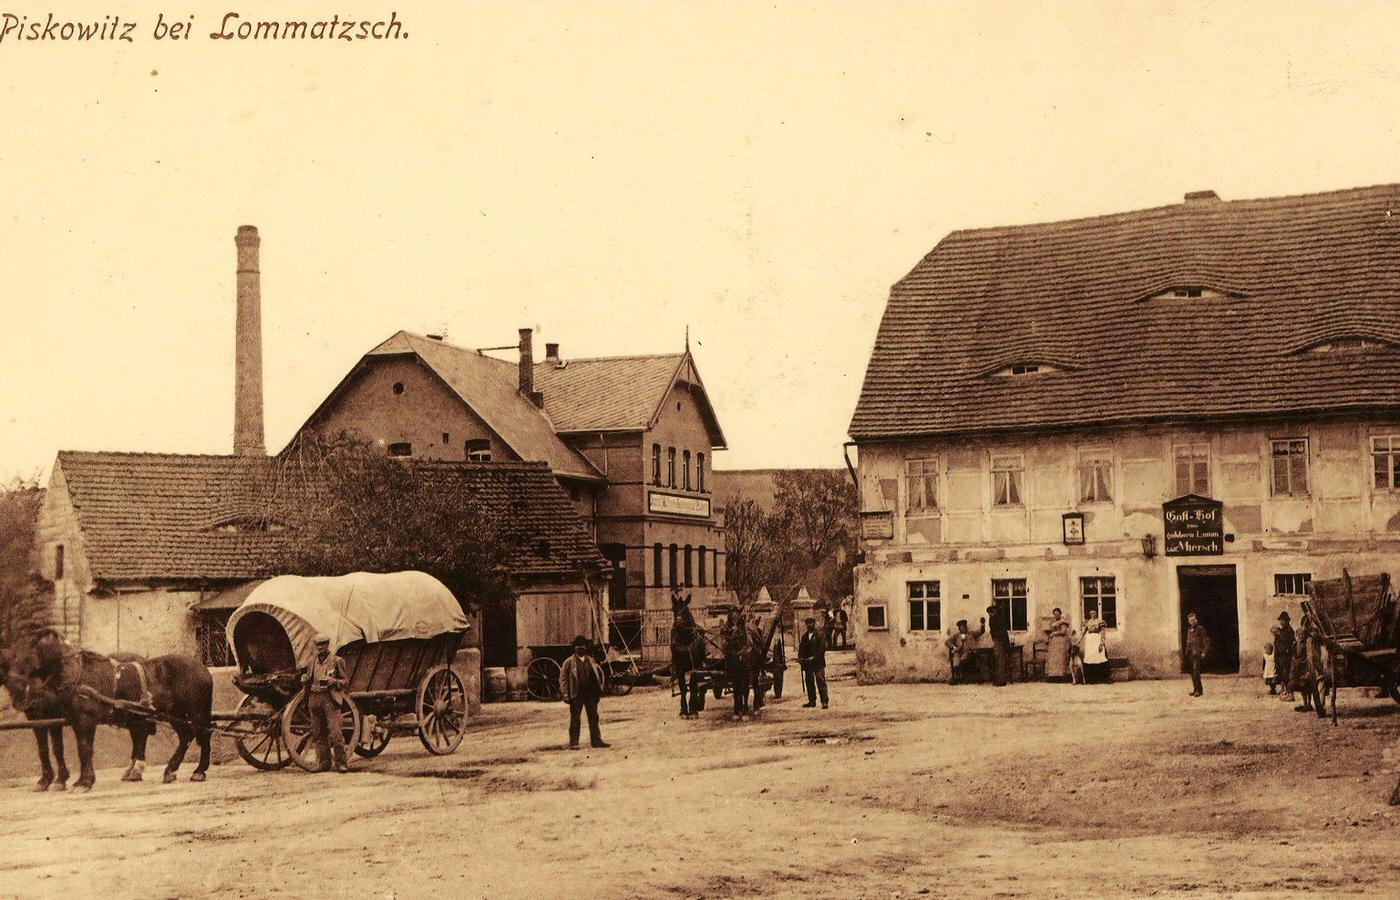 Restaurants in Landkreis Meissen, Lommatzsch, 1899.